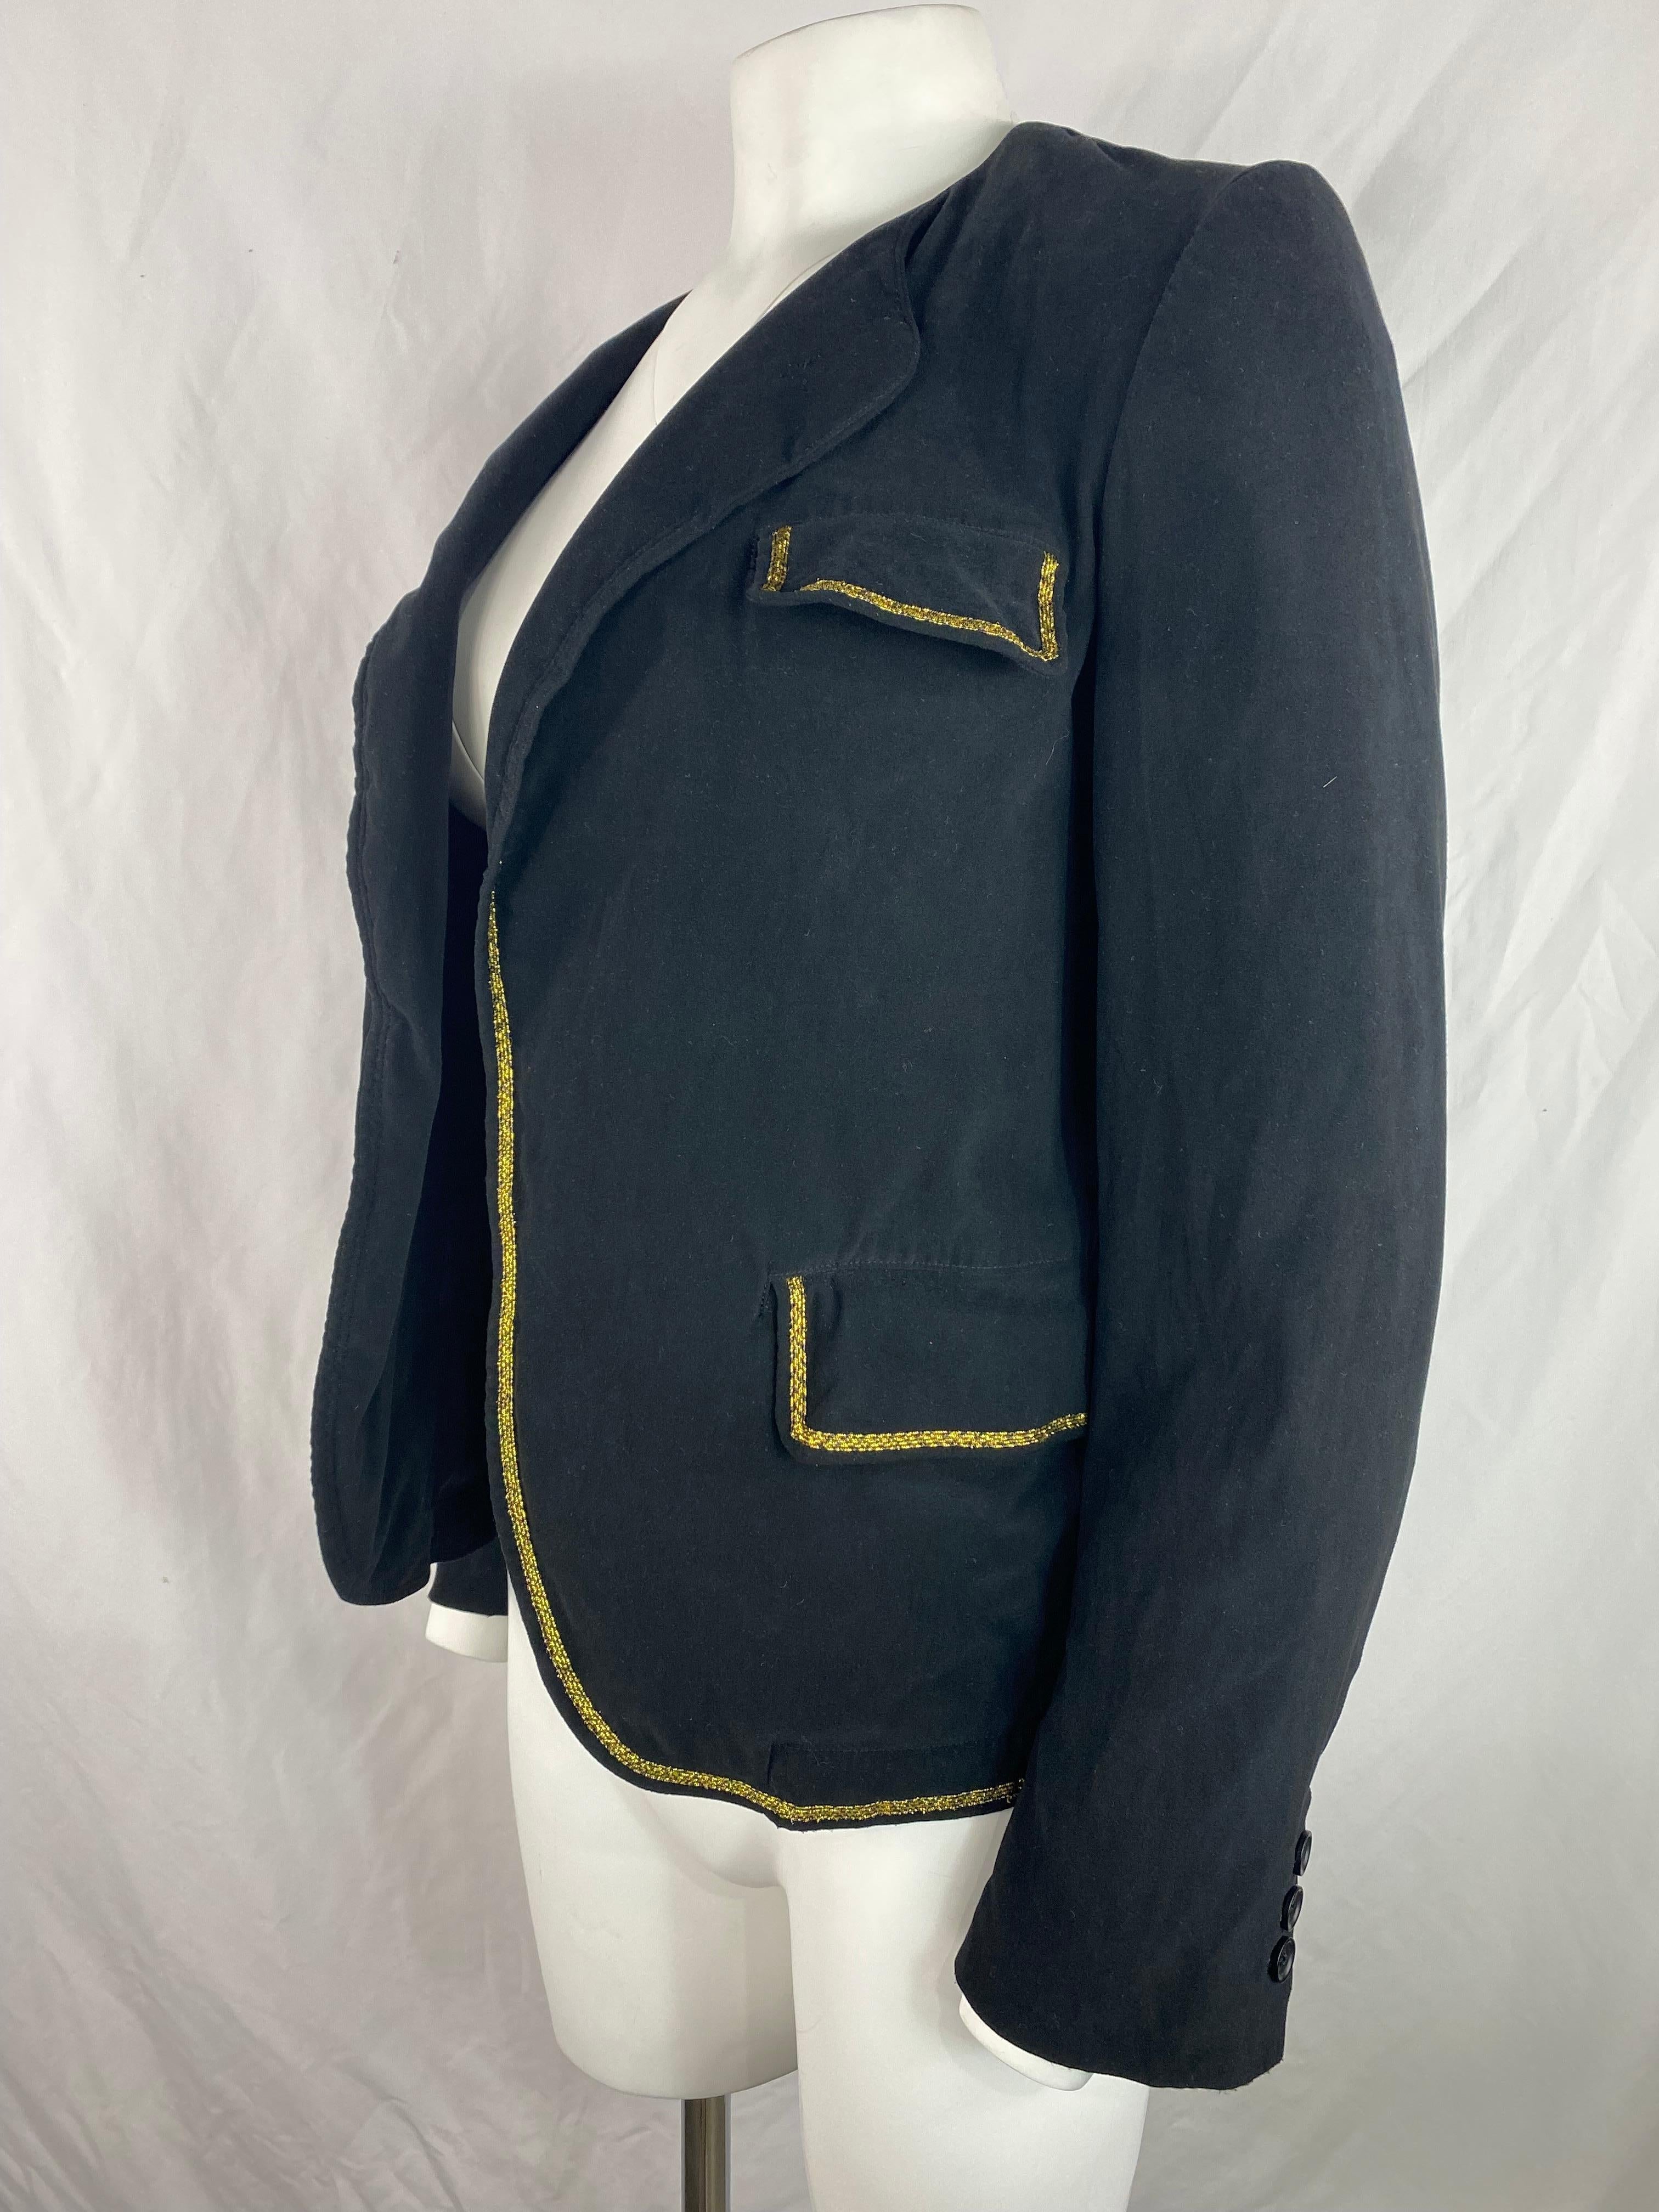 Détails du produit :

La veste est en velours noir avec des détails de garniture en or.